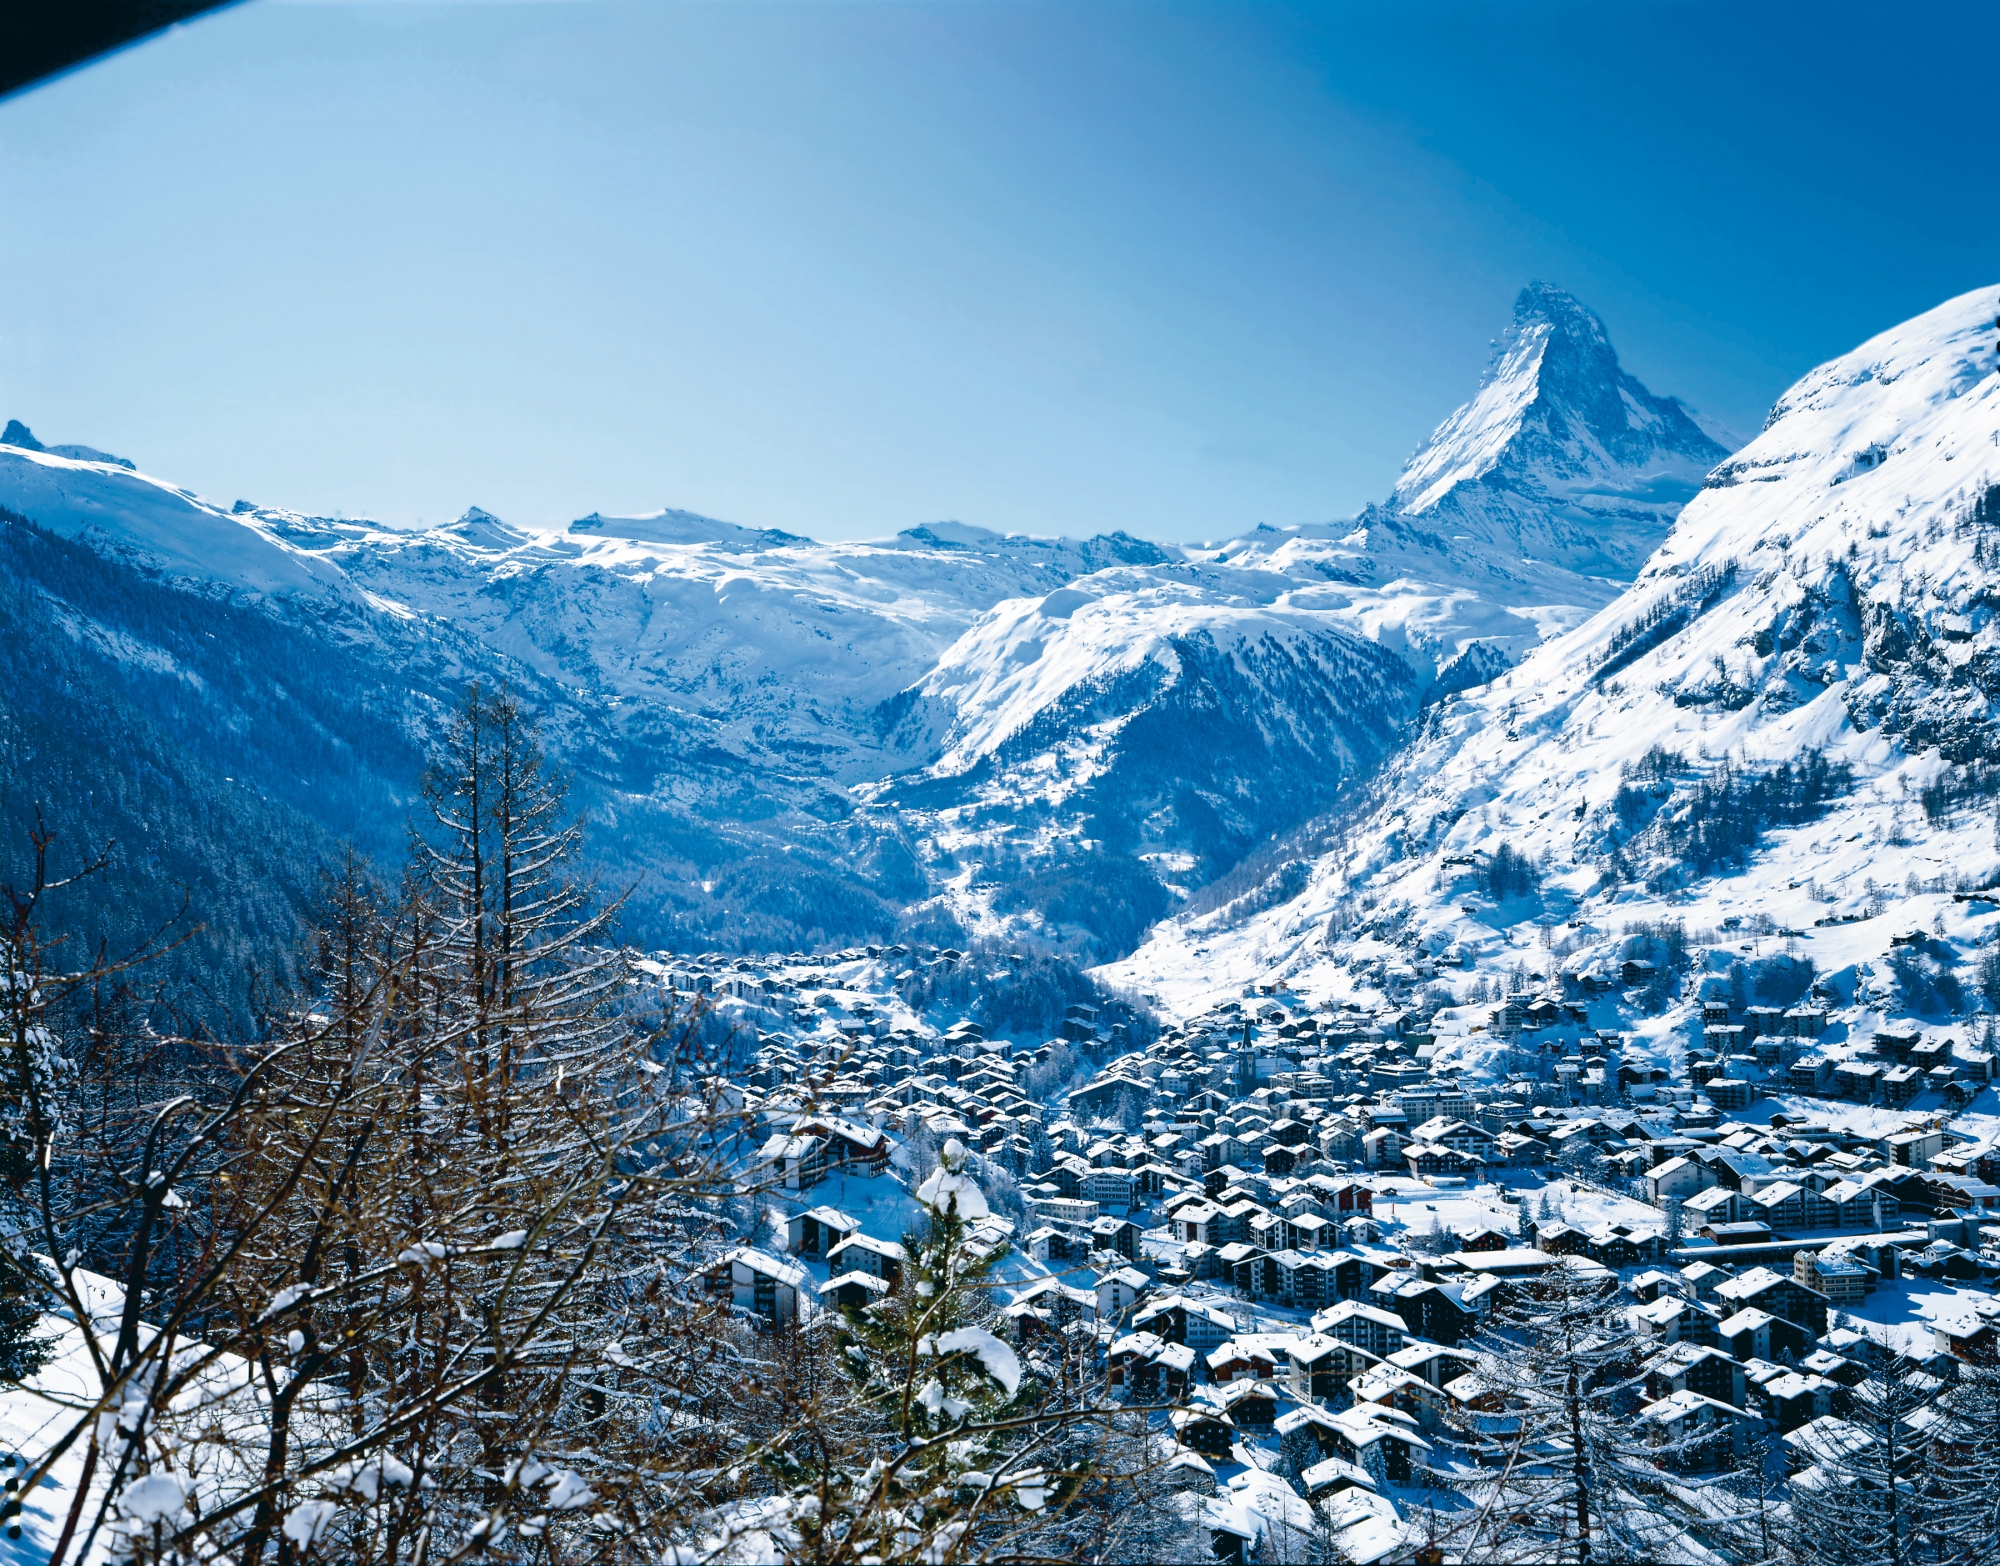 Sise dans une vallée encaissée, Zermatt a moins de place pour de nouveaux logements.